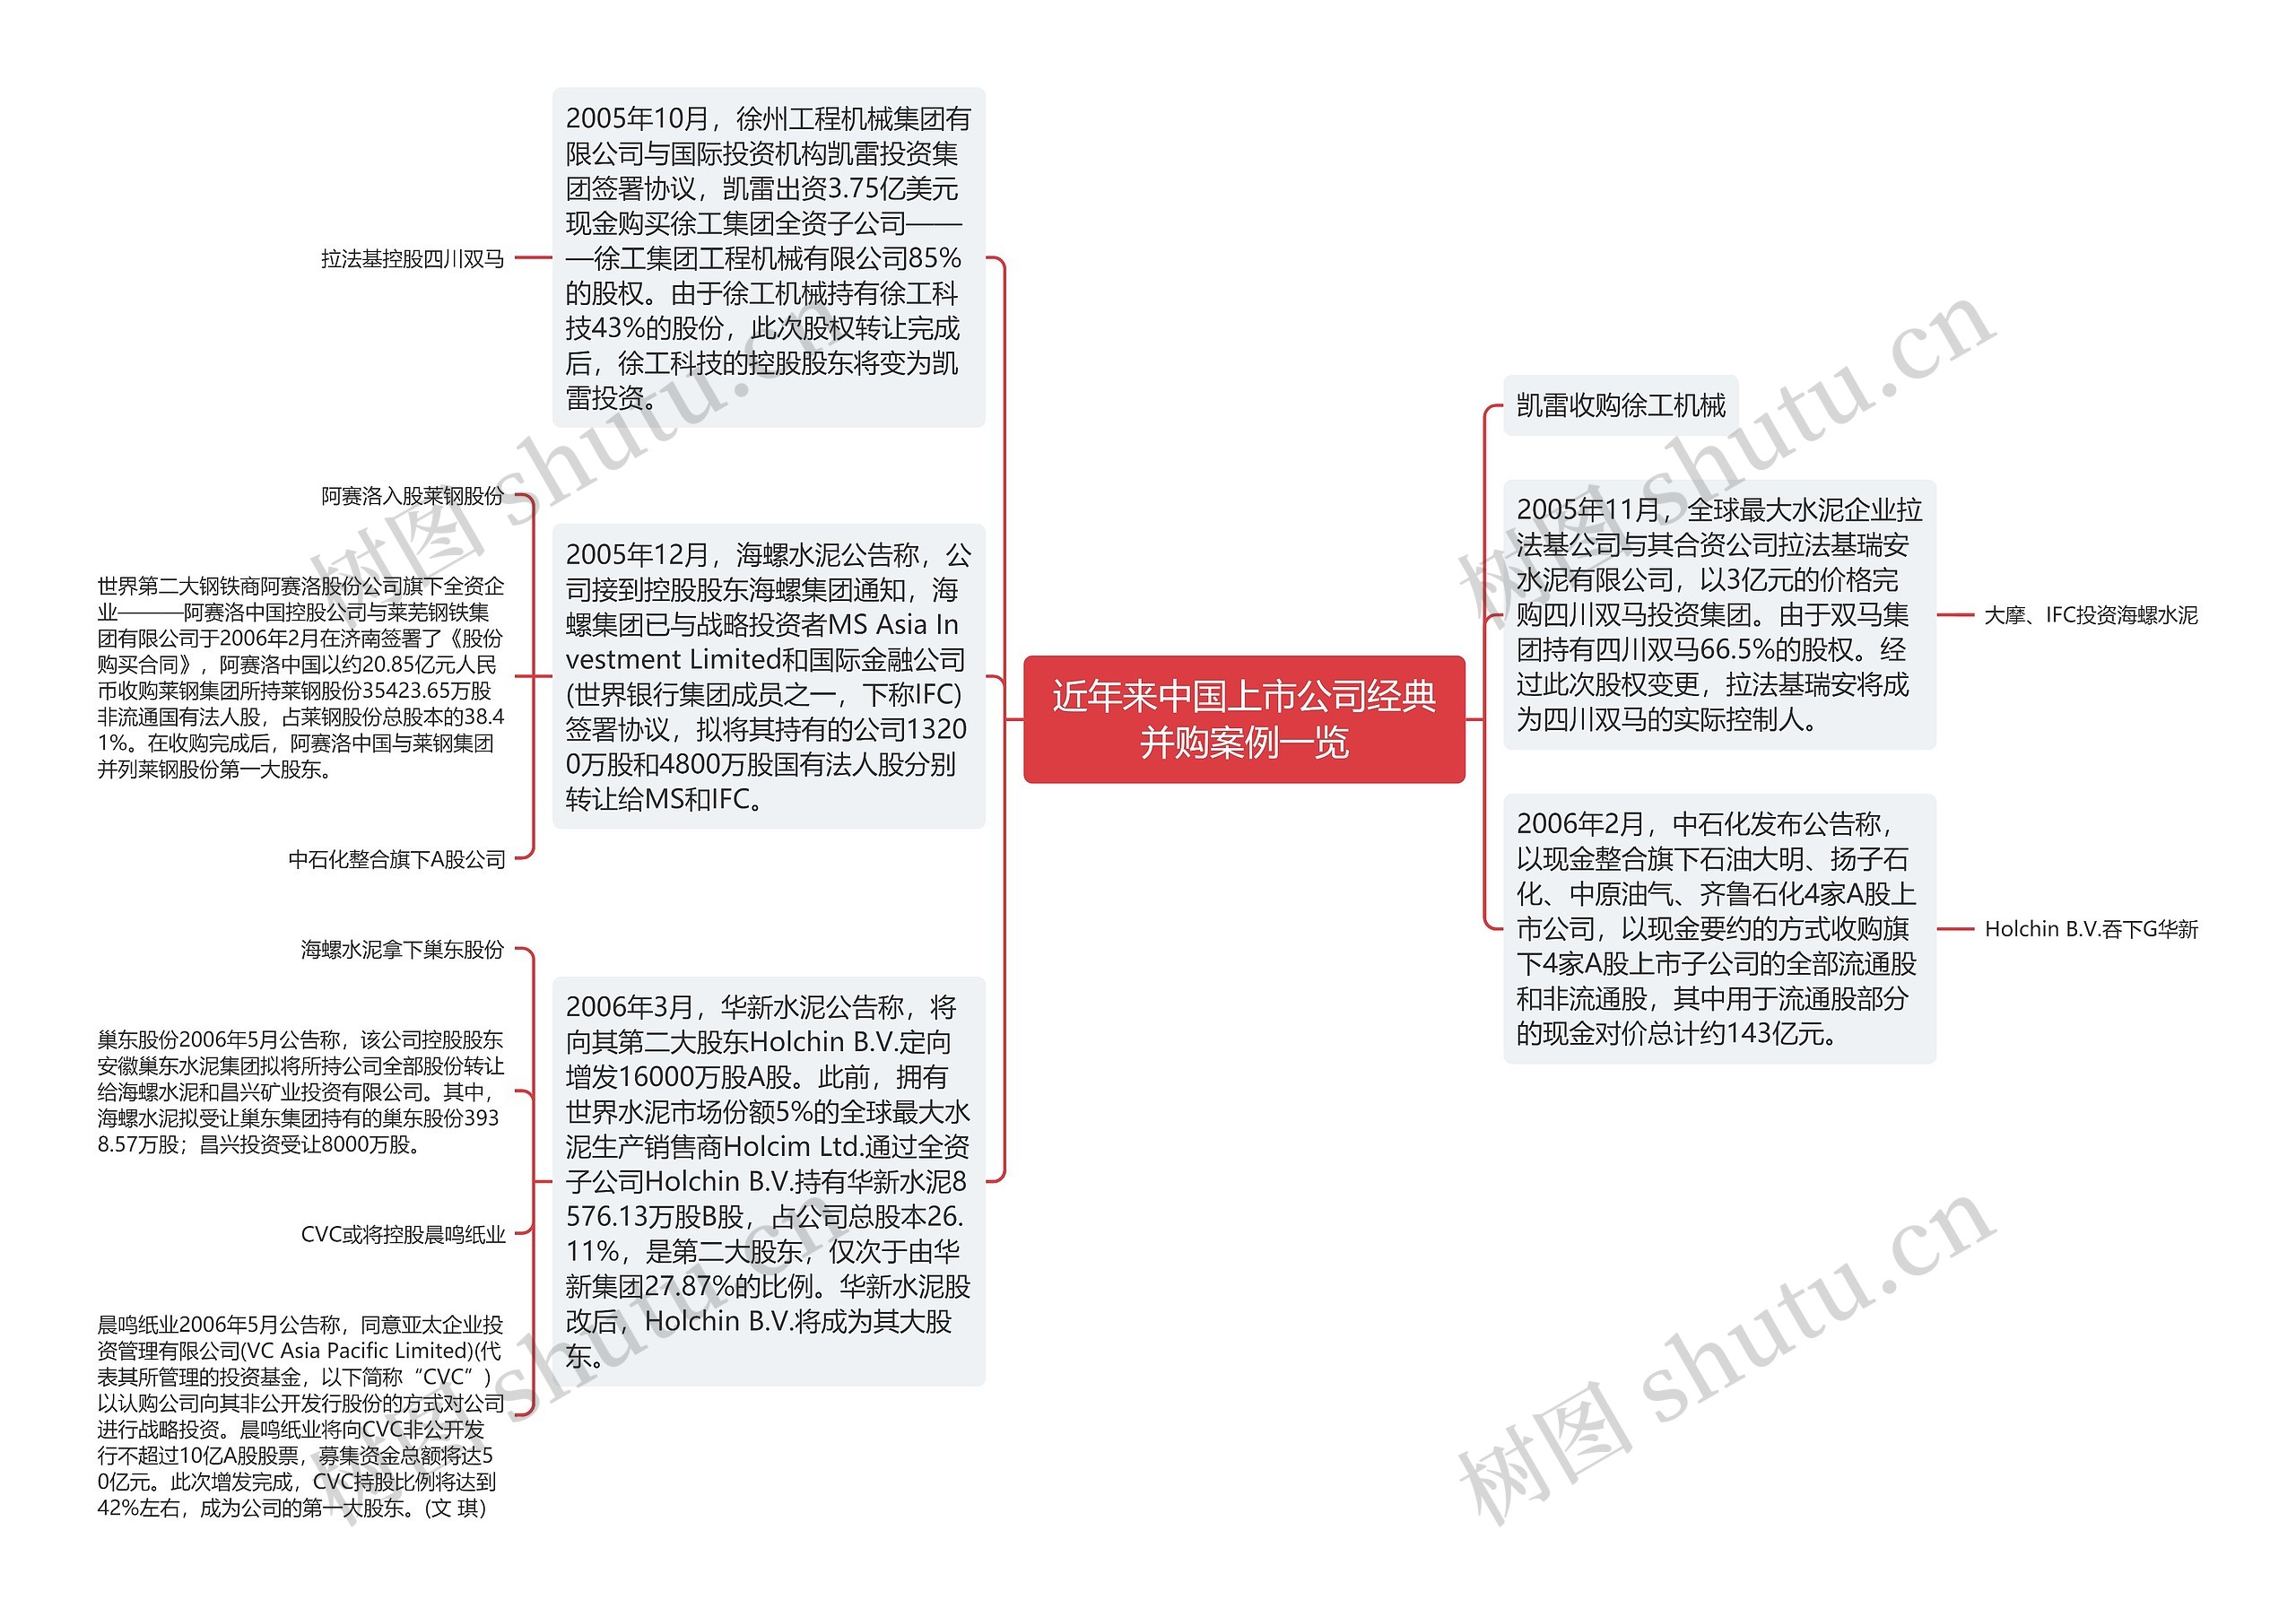 近年来中国上市公司经典并购案例一览思维导图